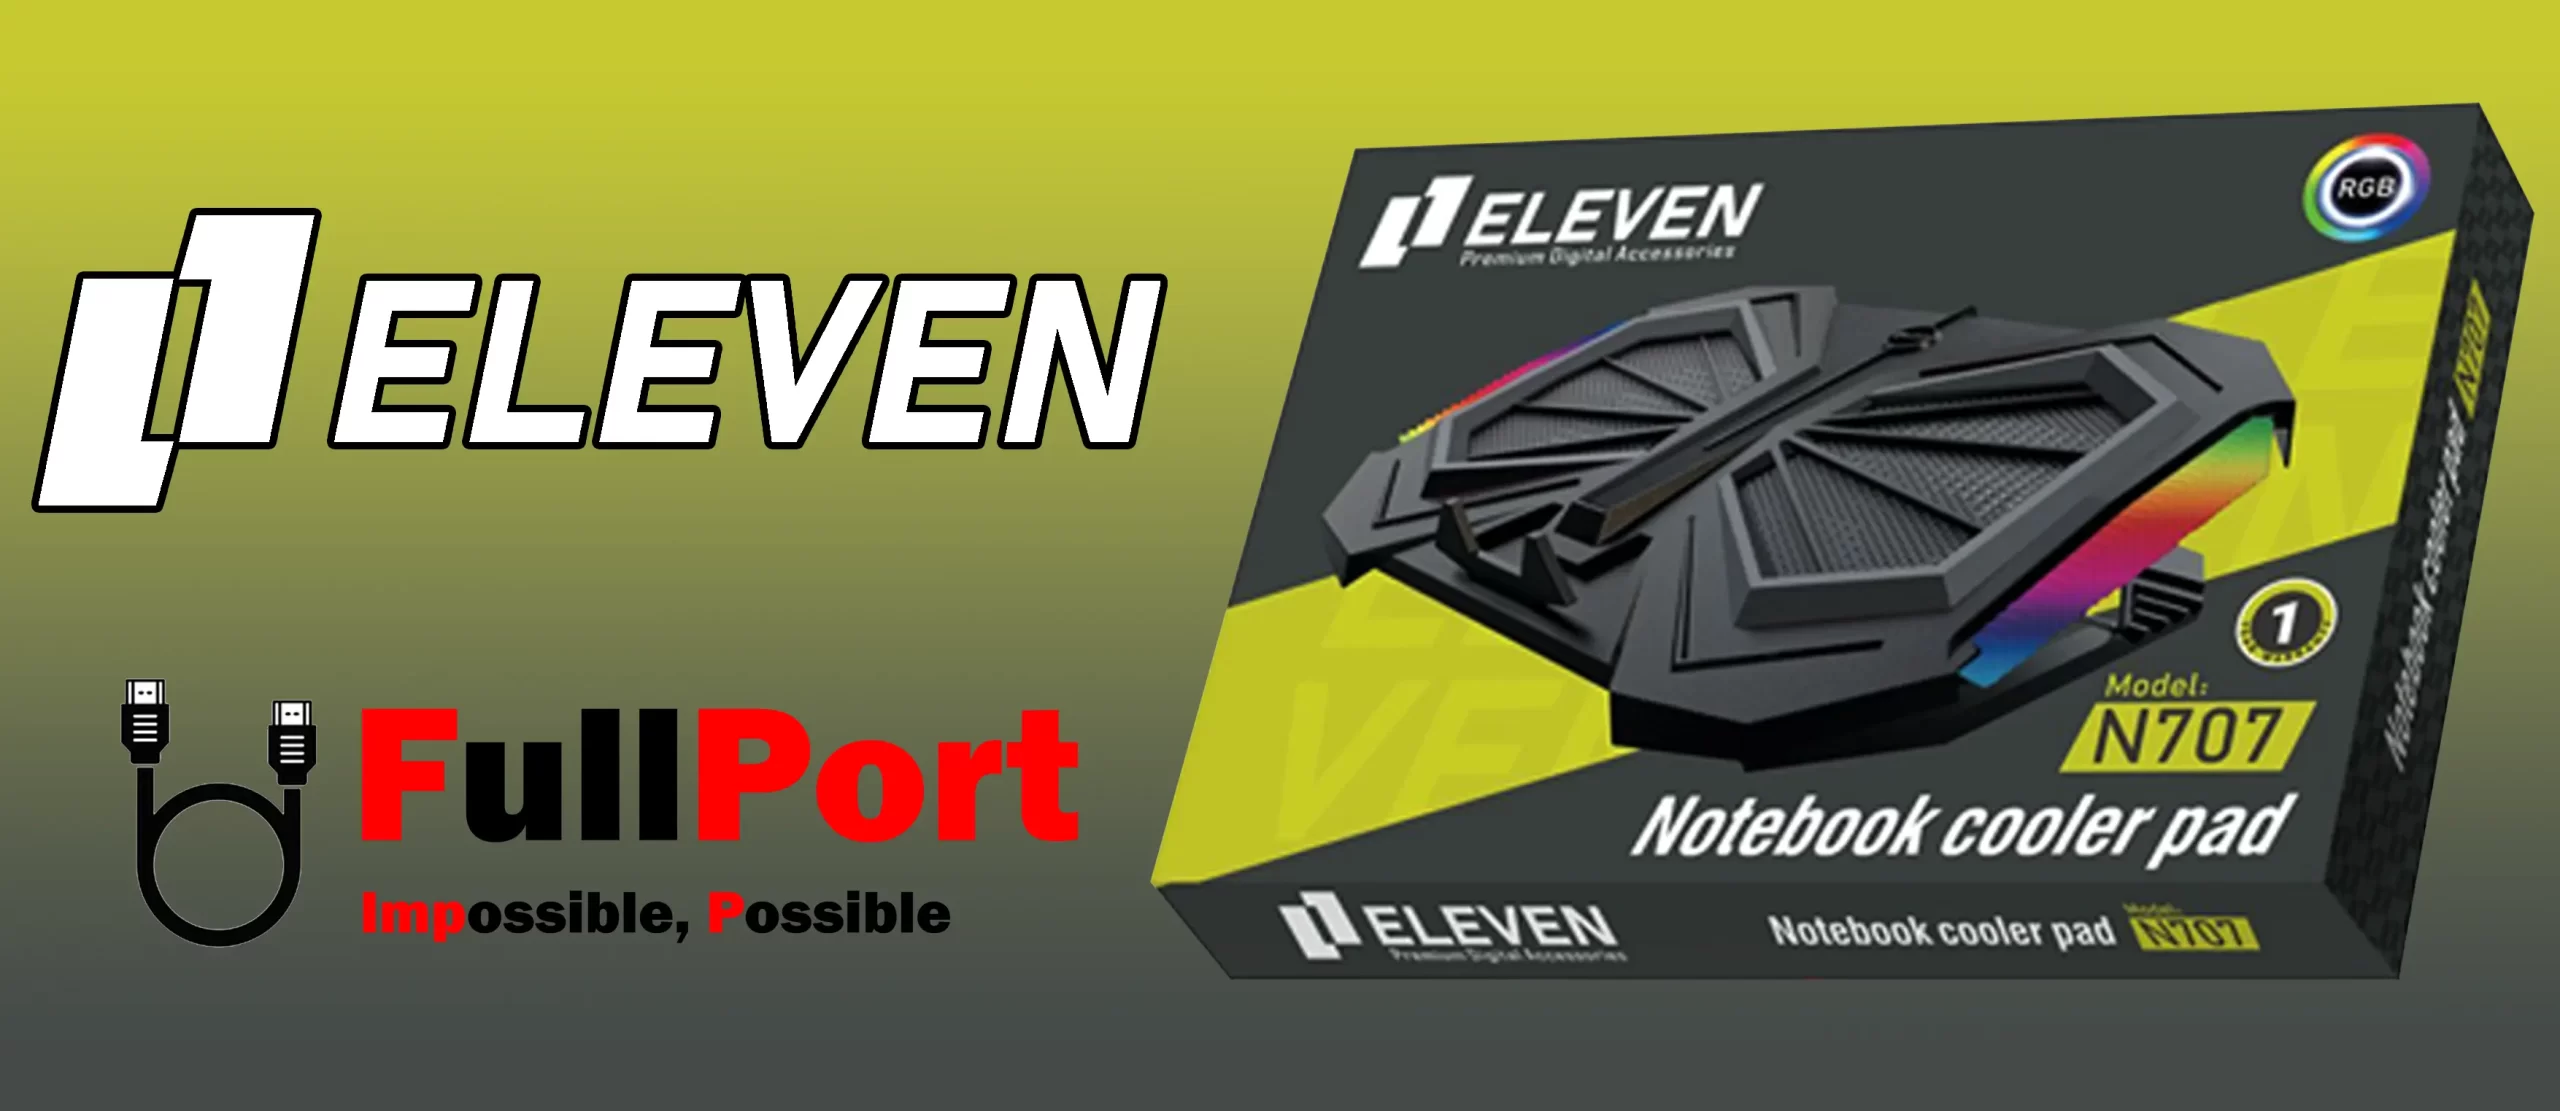 خرید اینترنتی پایه خنک کننده ایلون | ELEVEN مدل N707 از فروشگاه تخصصی جانبی فول پورت